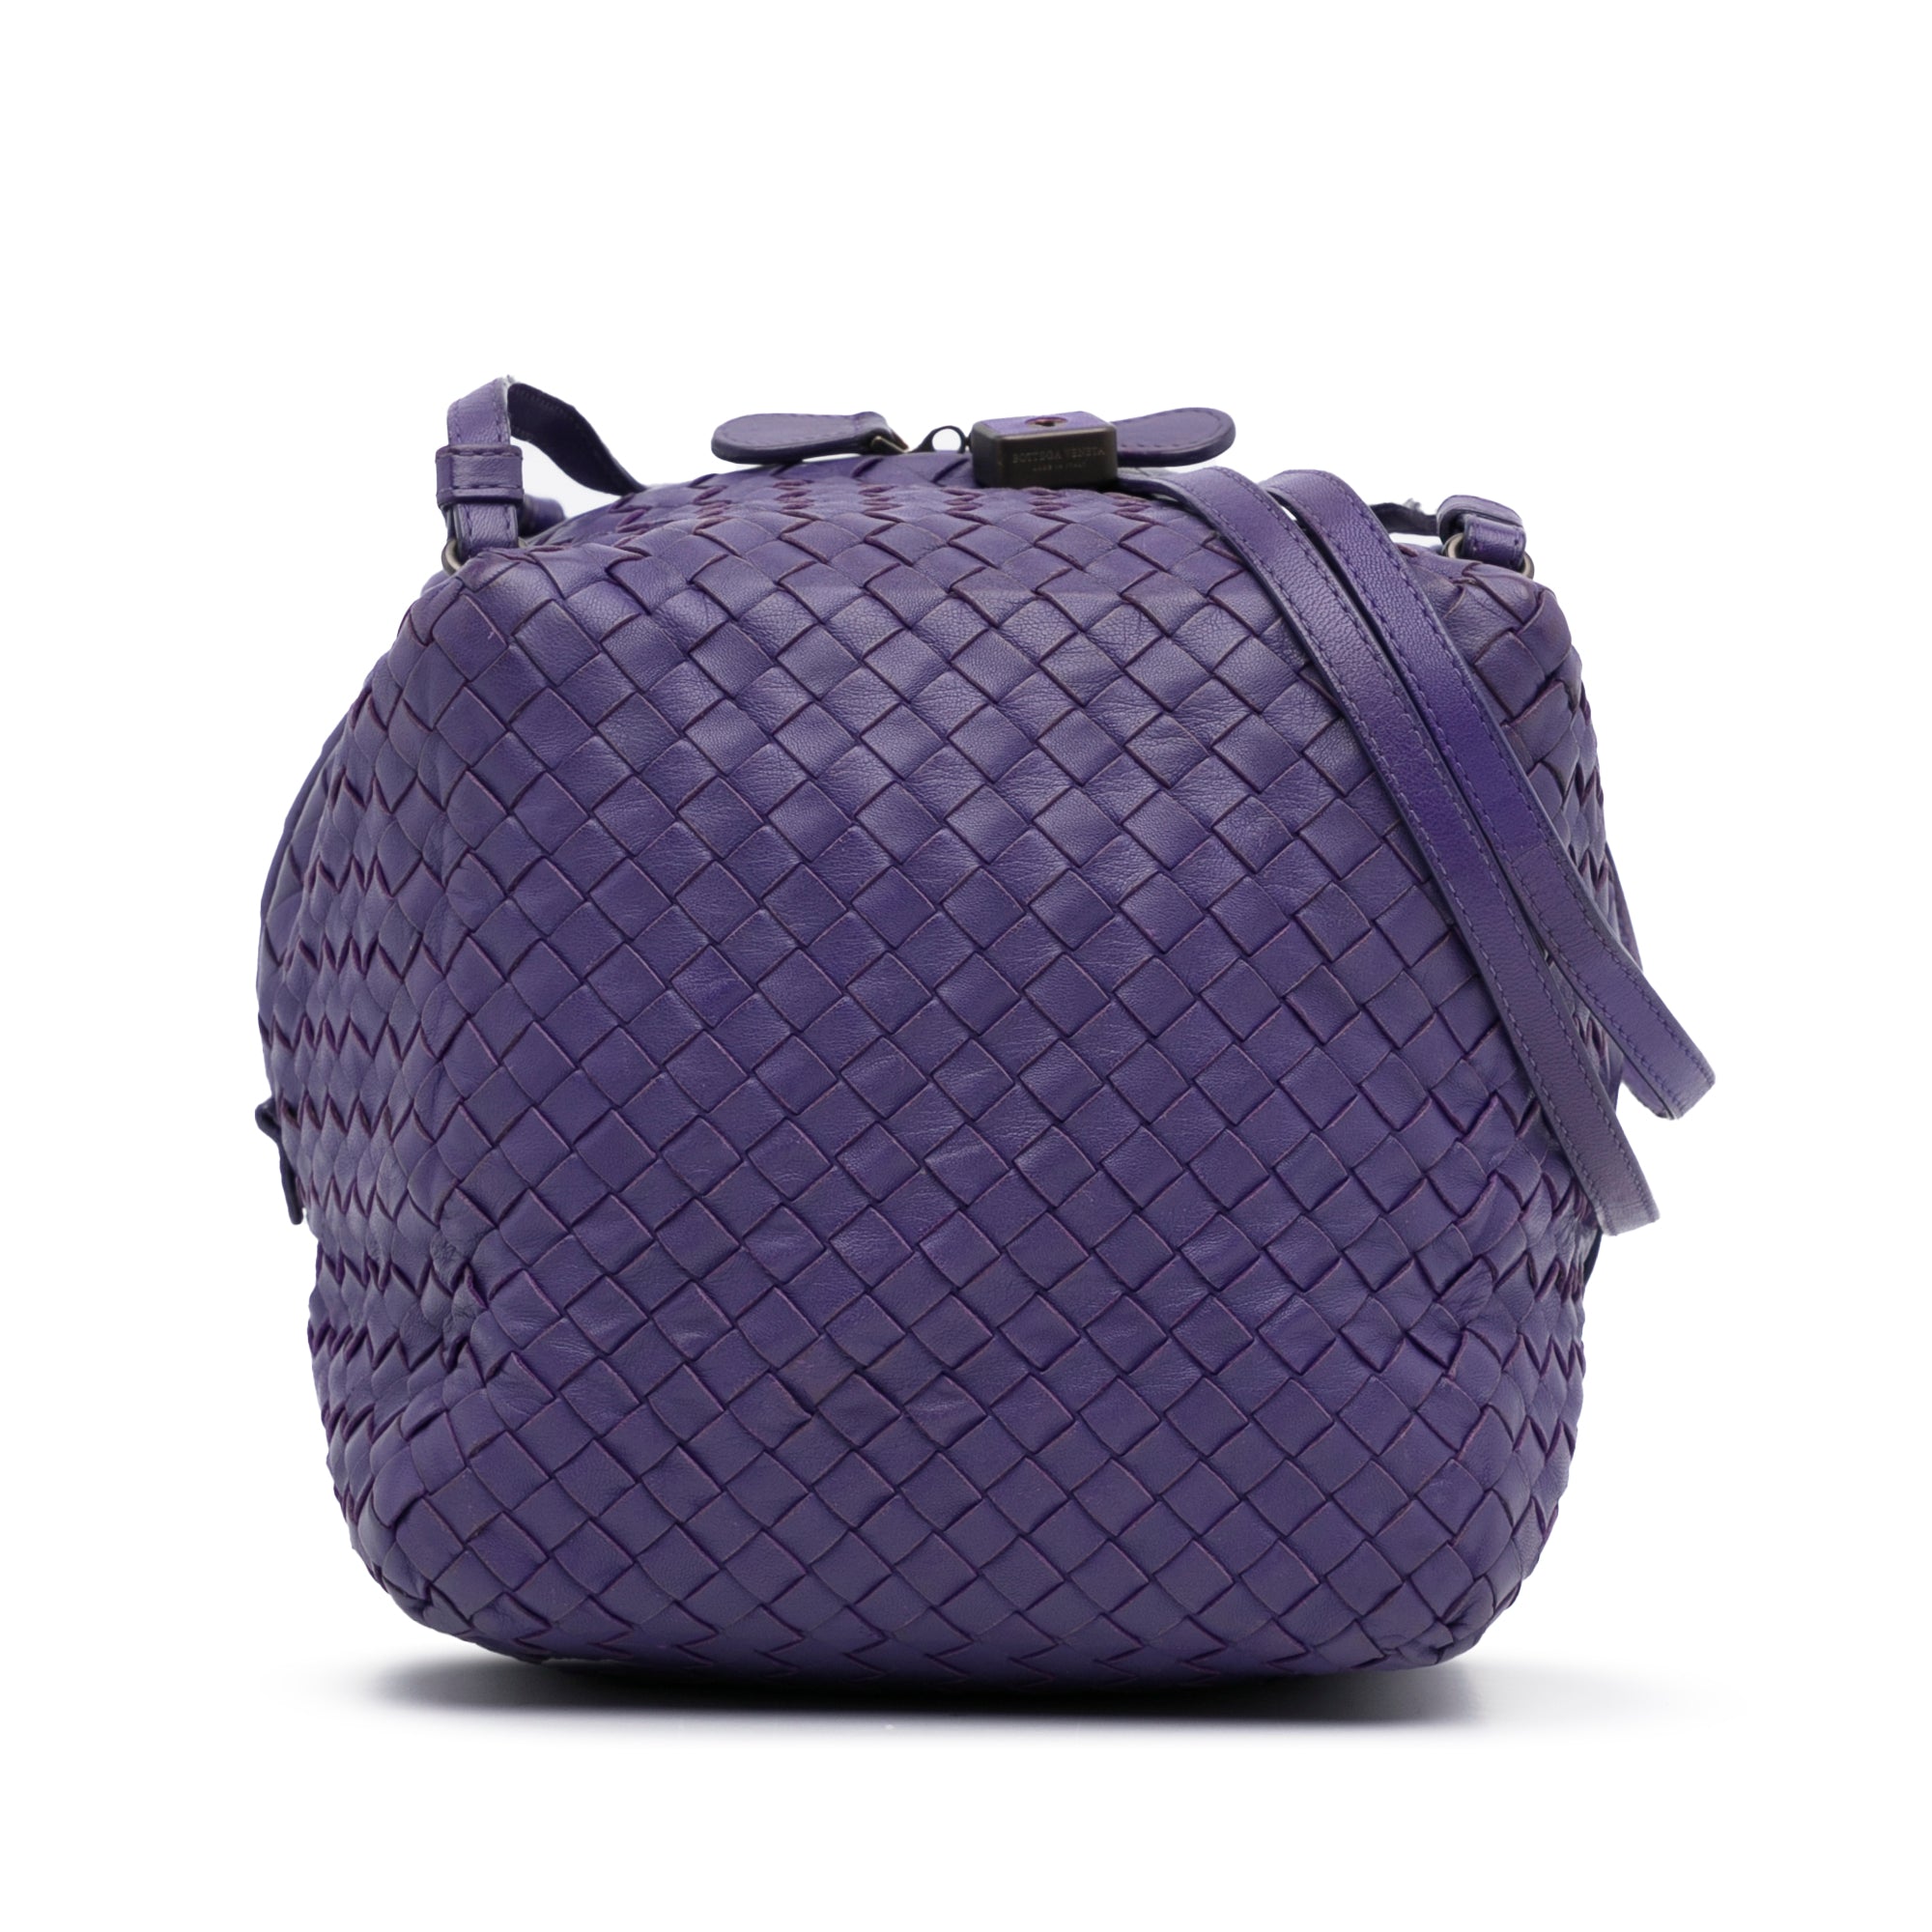 Bottega Veneta - Authenticated Point Handbag - Leather Black Plain for Women, Never Worn